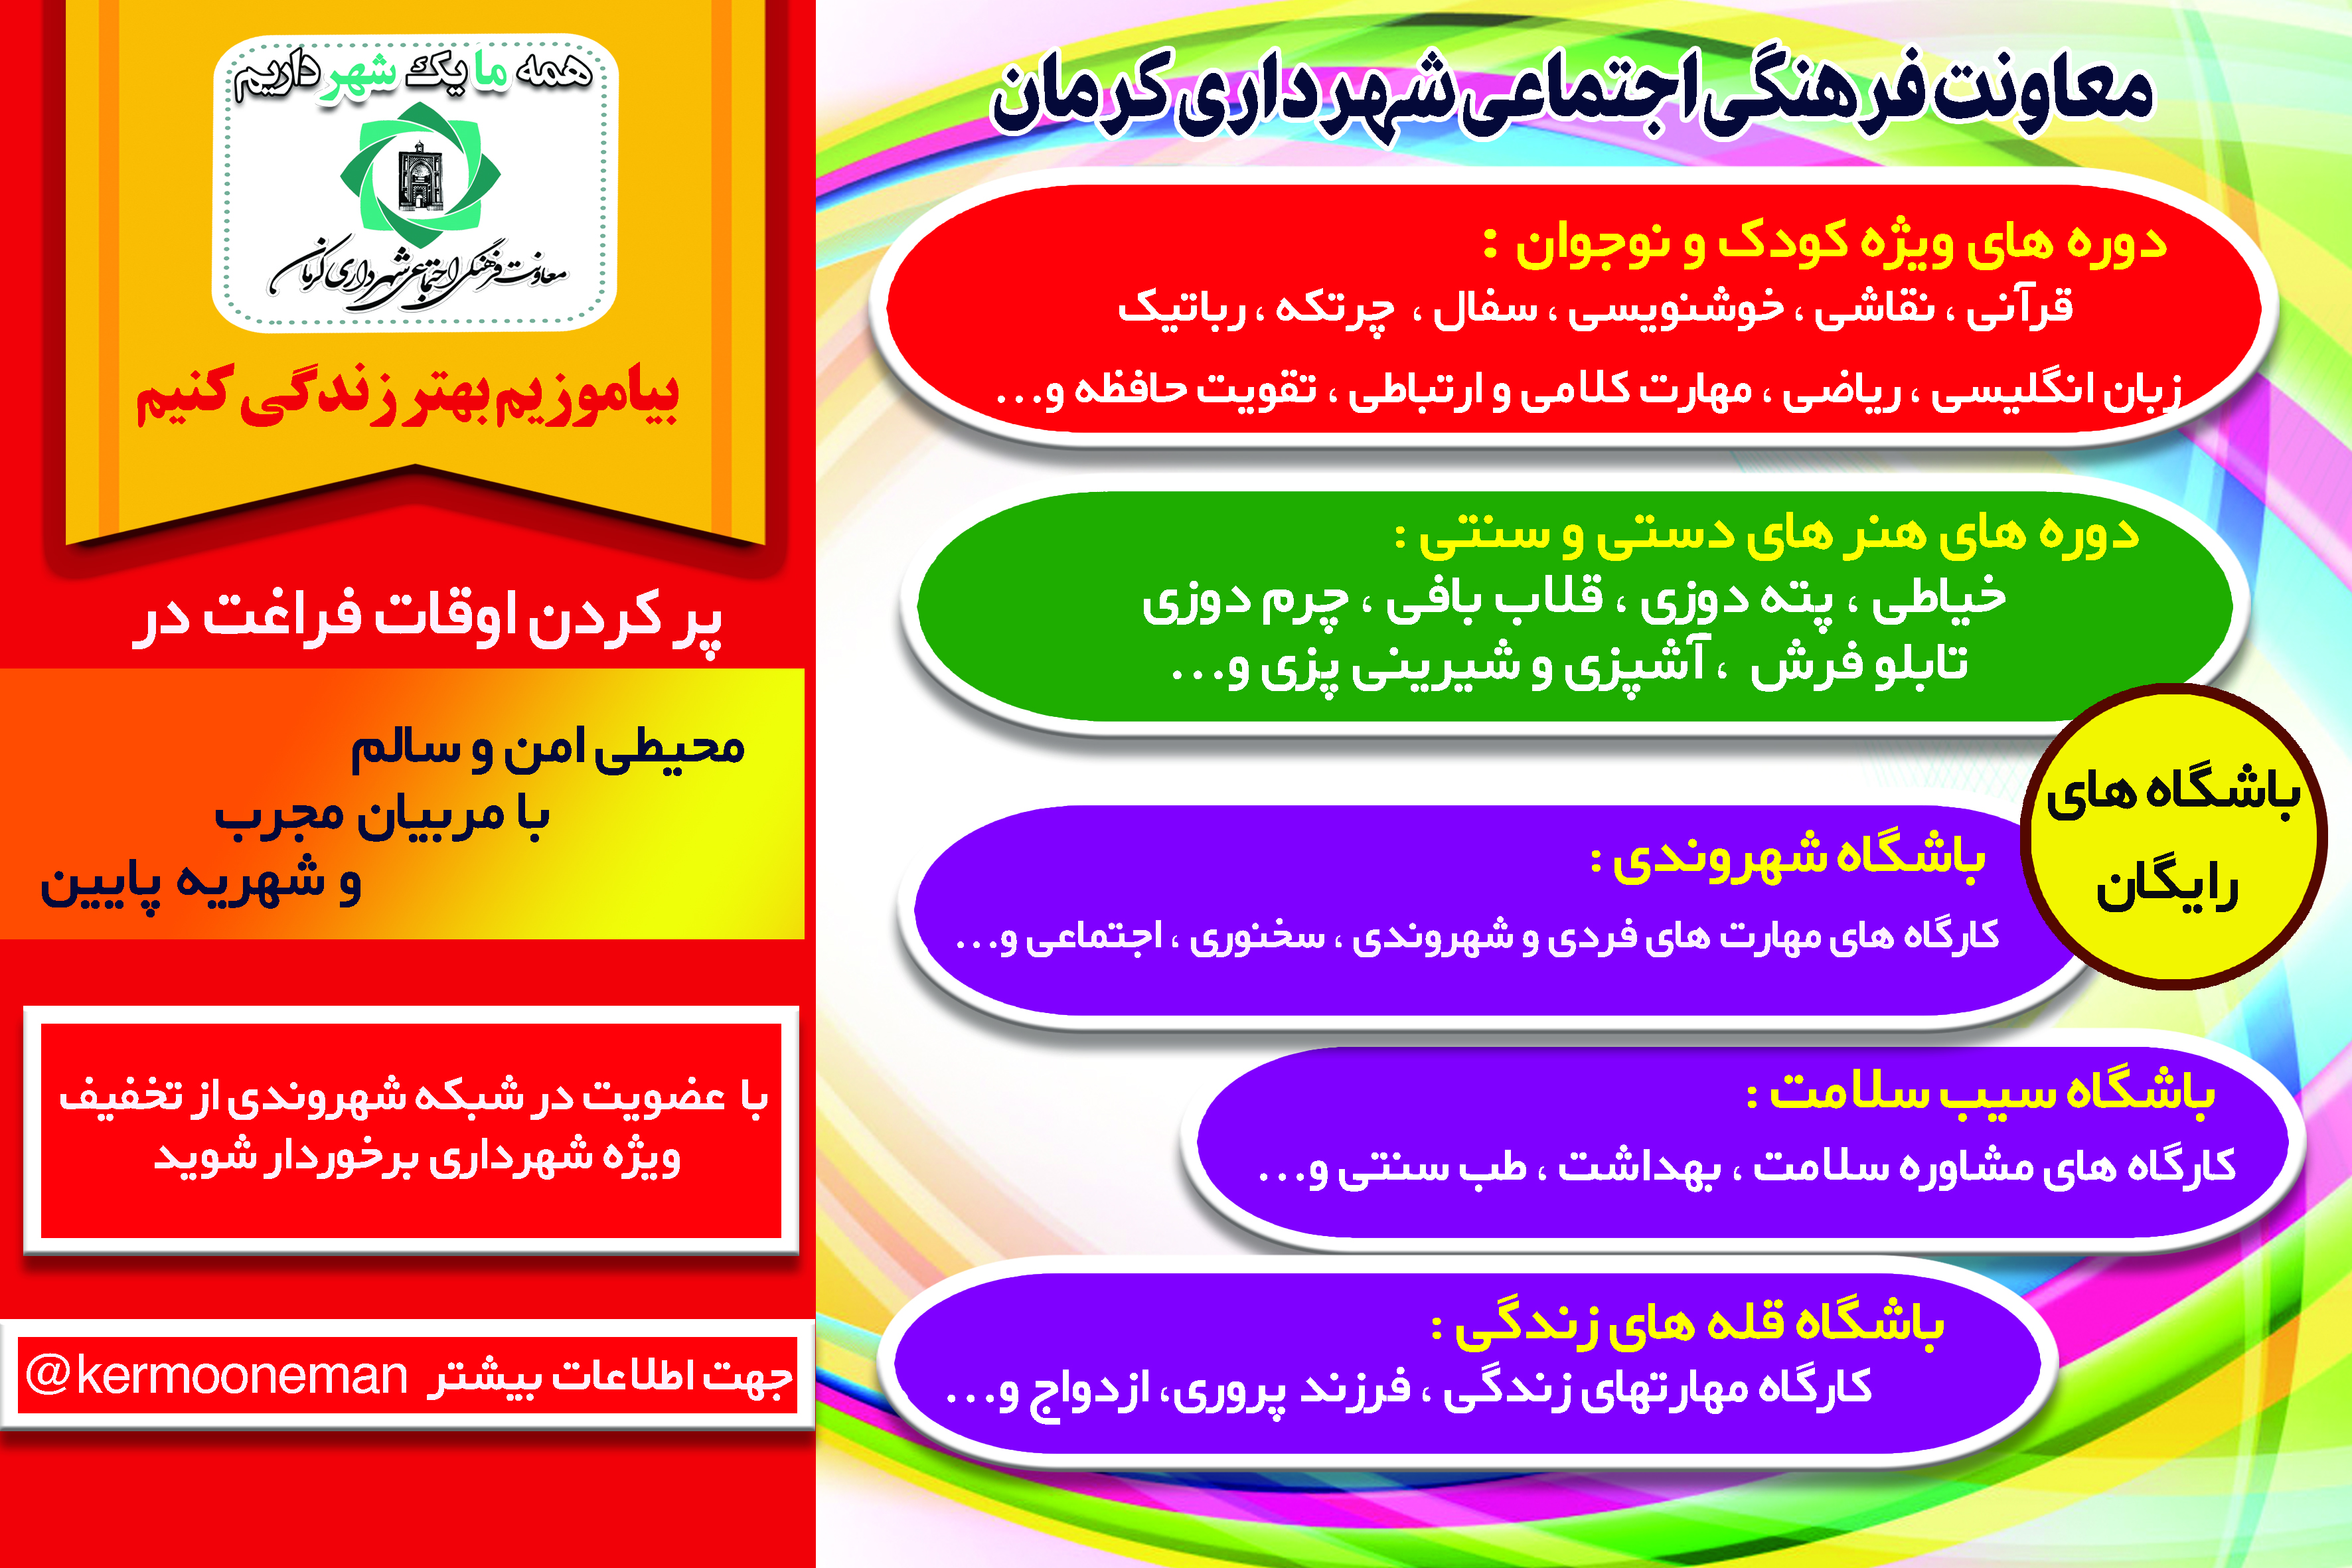 کلاس های آموزشی شهرداری کرمان